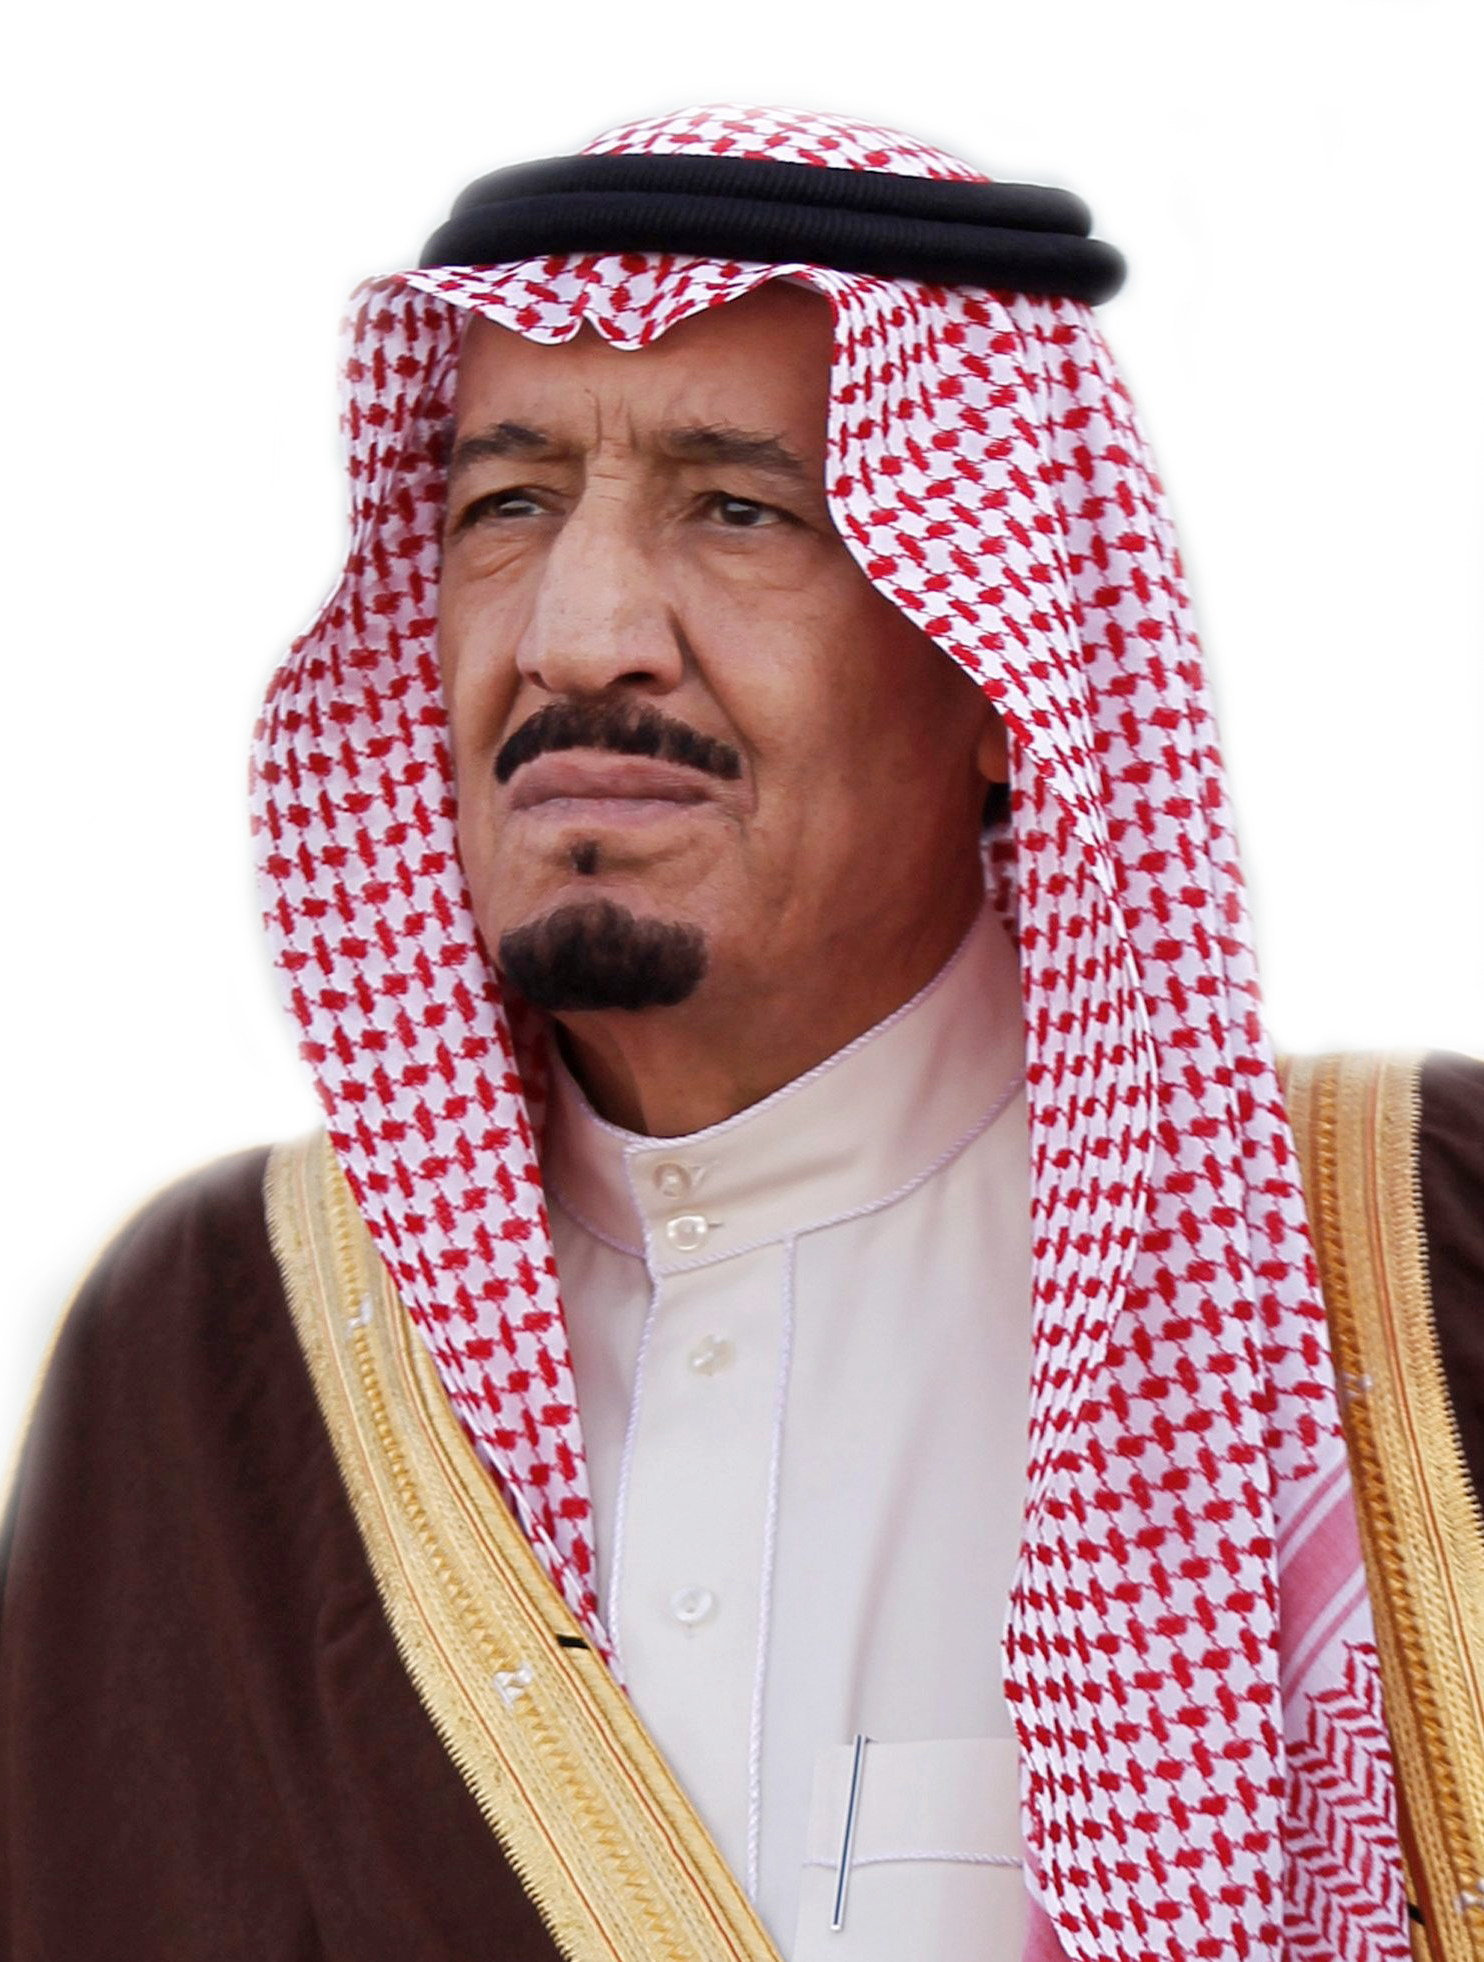 "واشنطن بوست": العاهل السعودي "قلب الأوضاع" في الشرق الأوسط